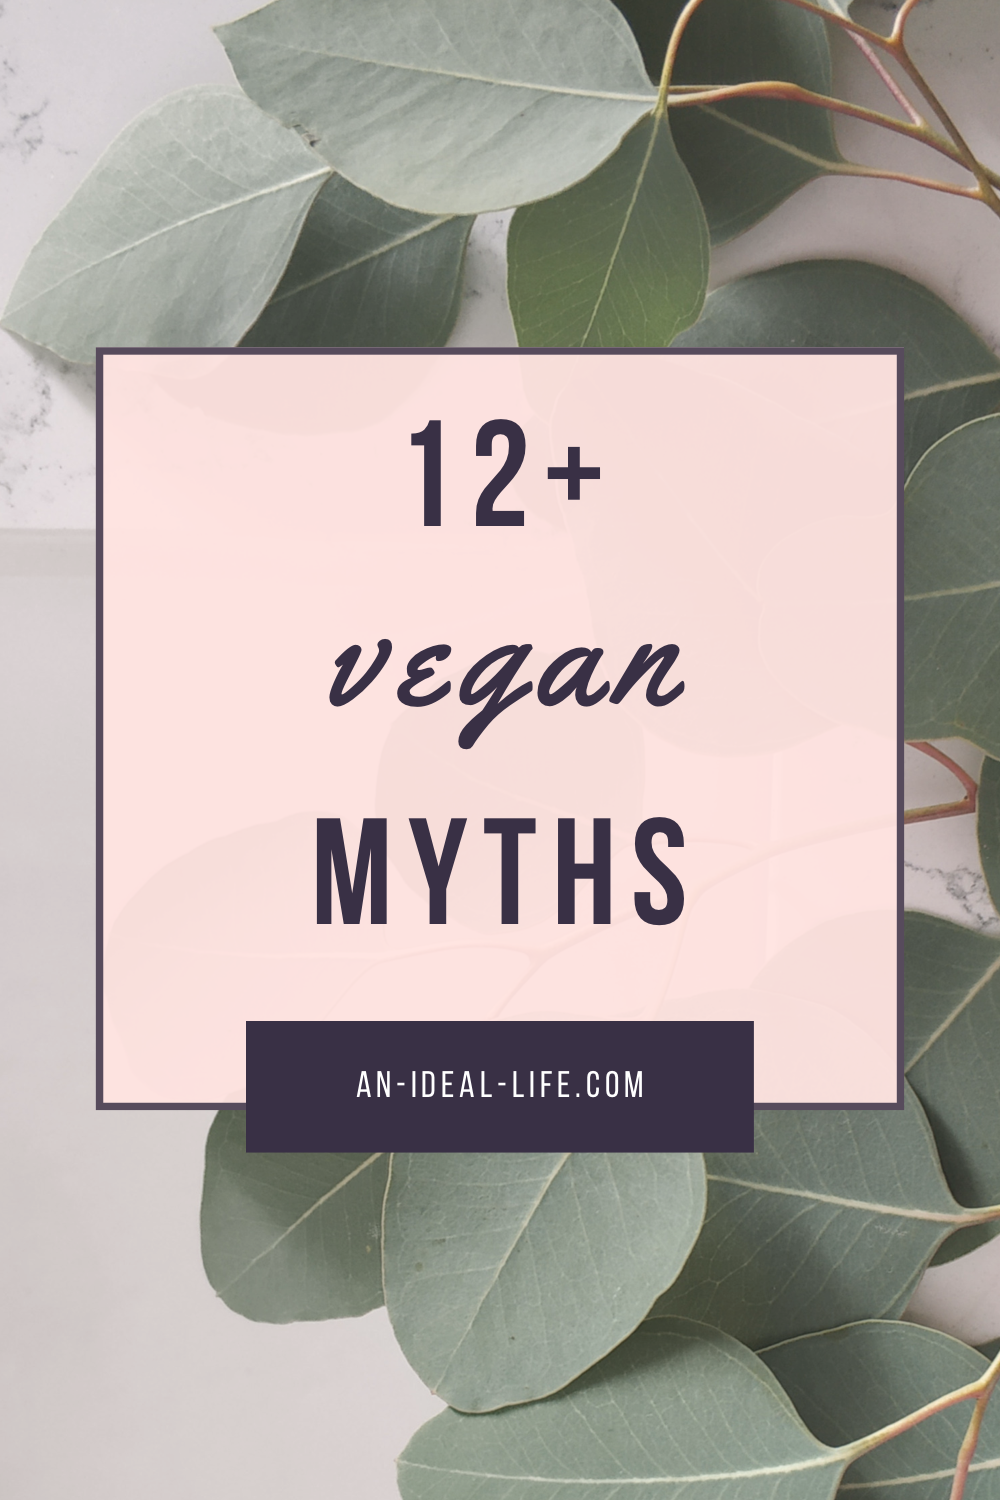 Vegan Myths